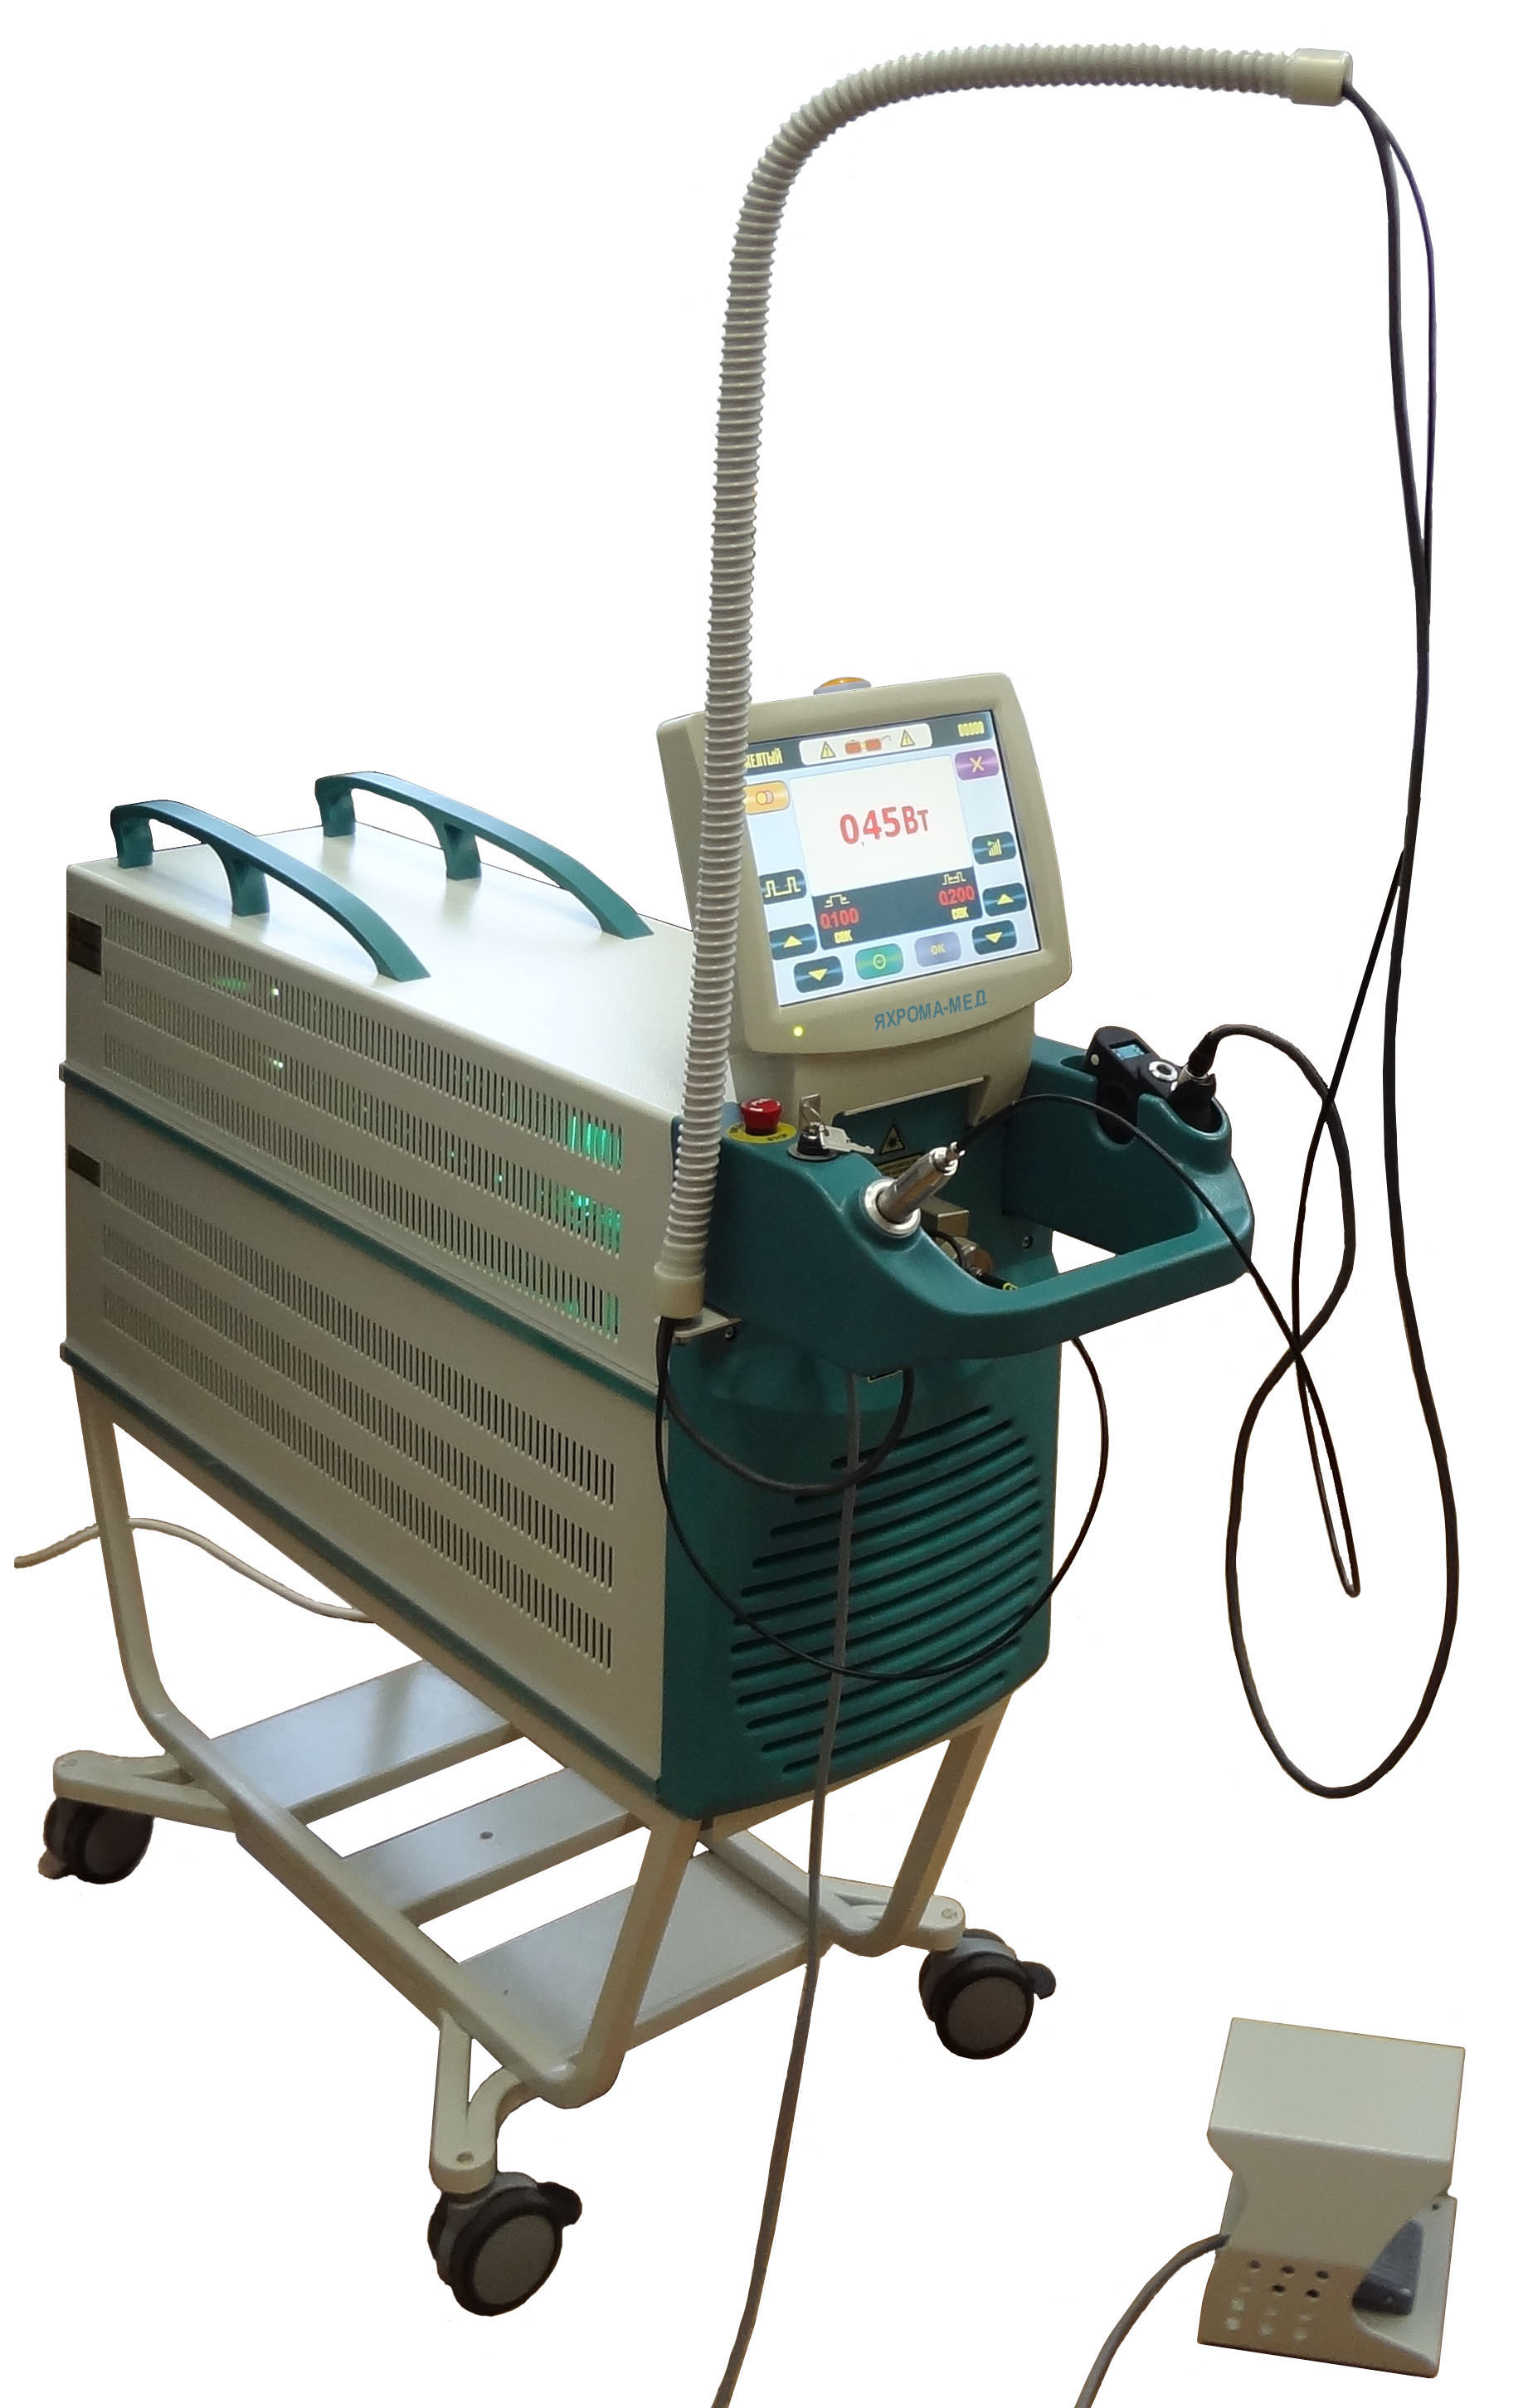 دستگاه لیزر بخار مس برای تخریب انتخابی عیوب عروقی و رنگدانه پوست و غشاهای مخاطی "Yakhroma-Med"